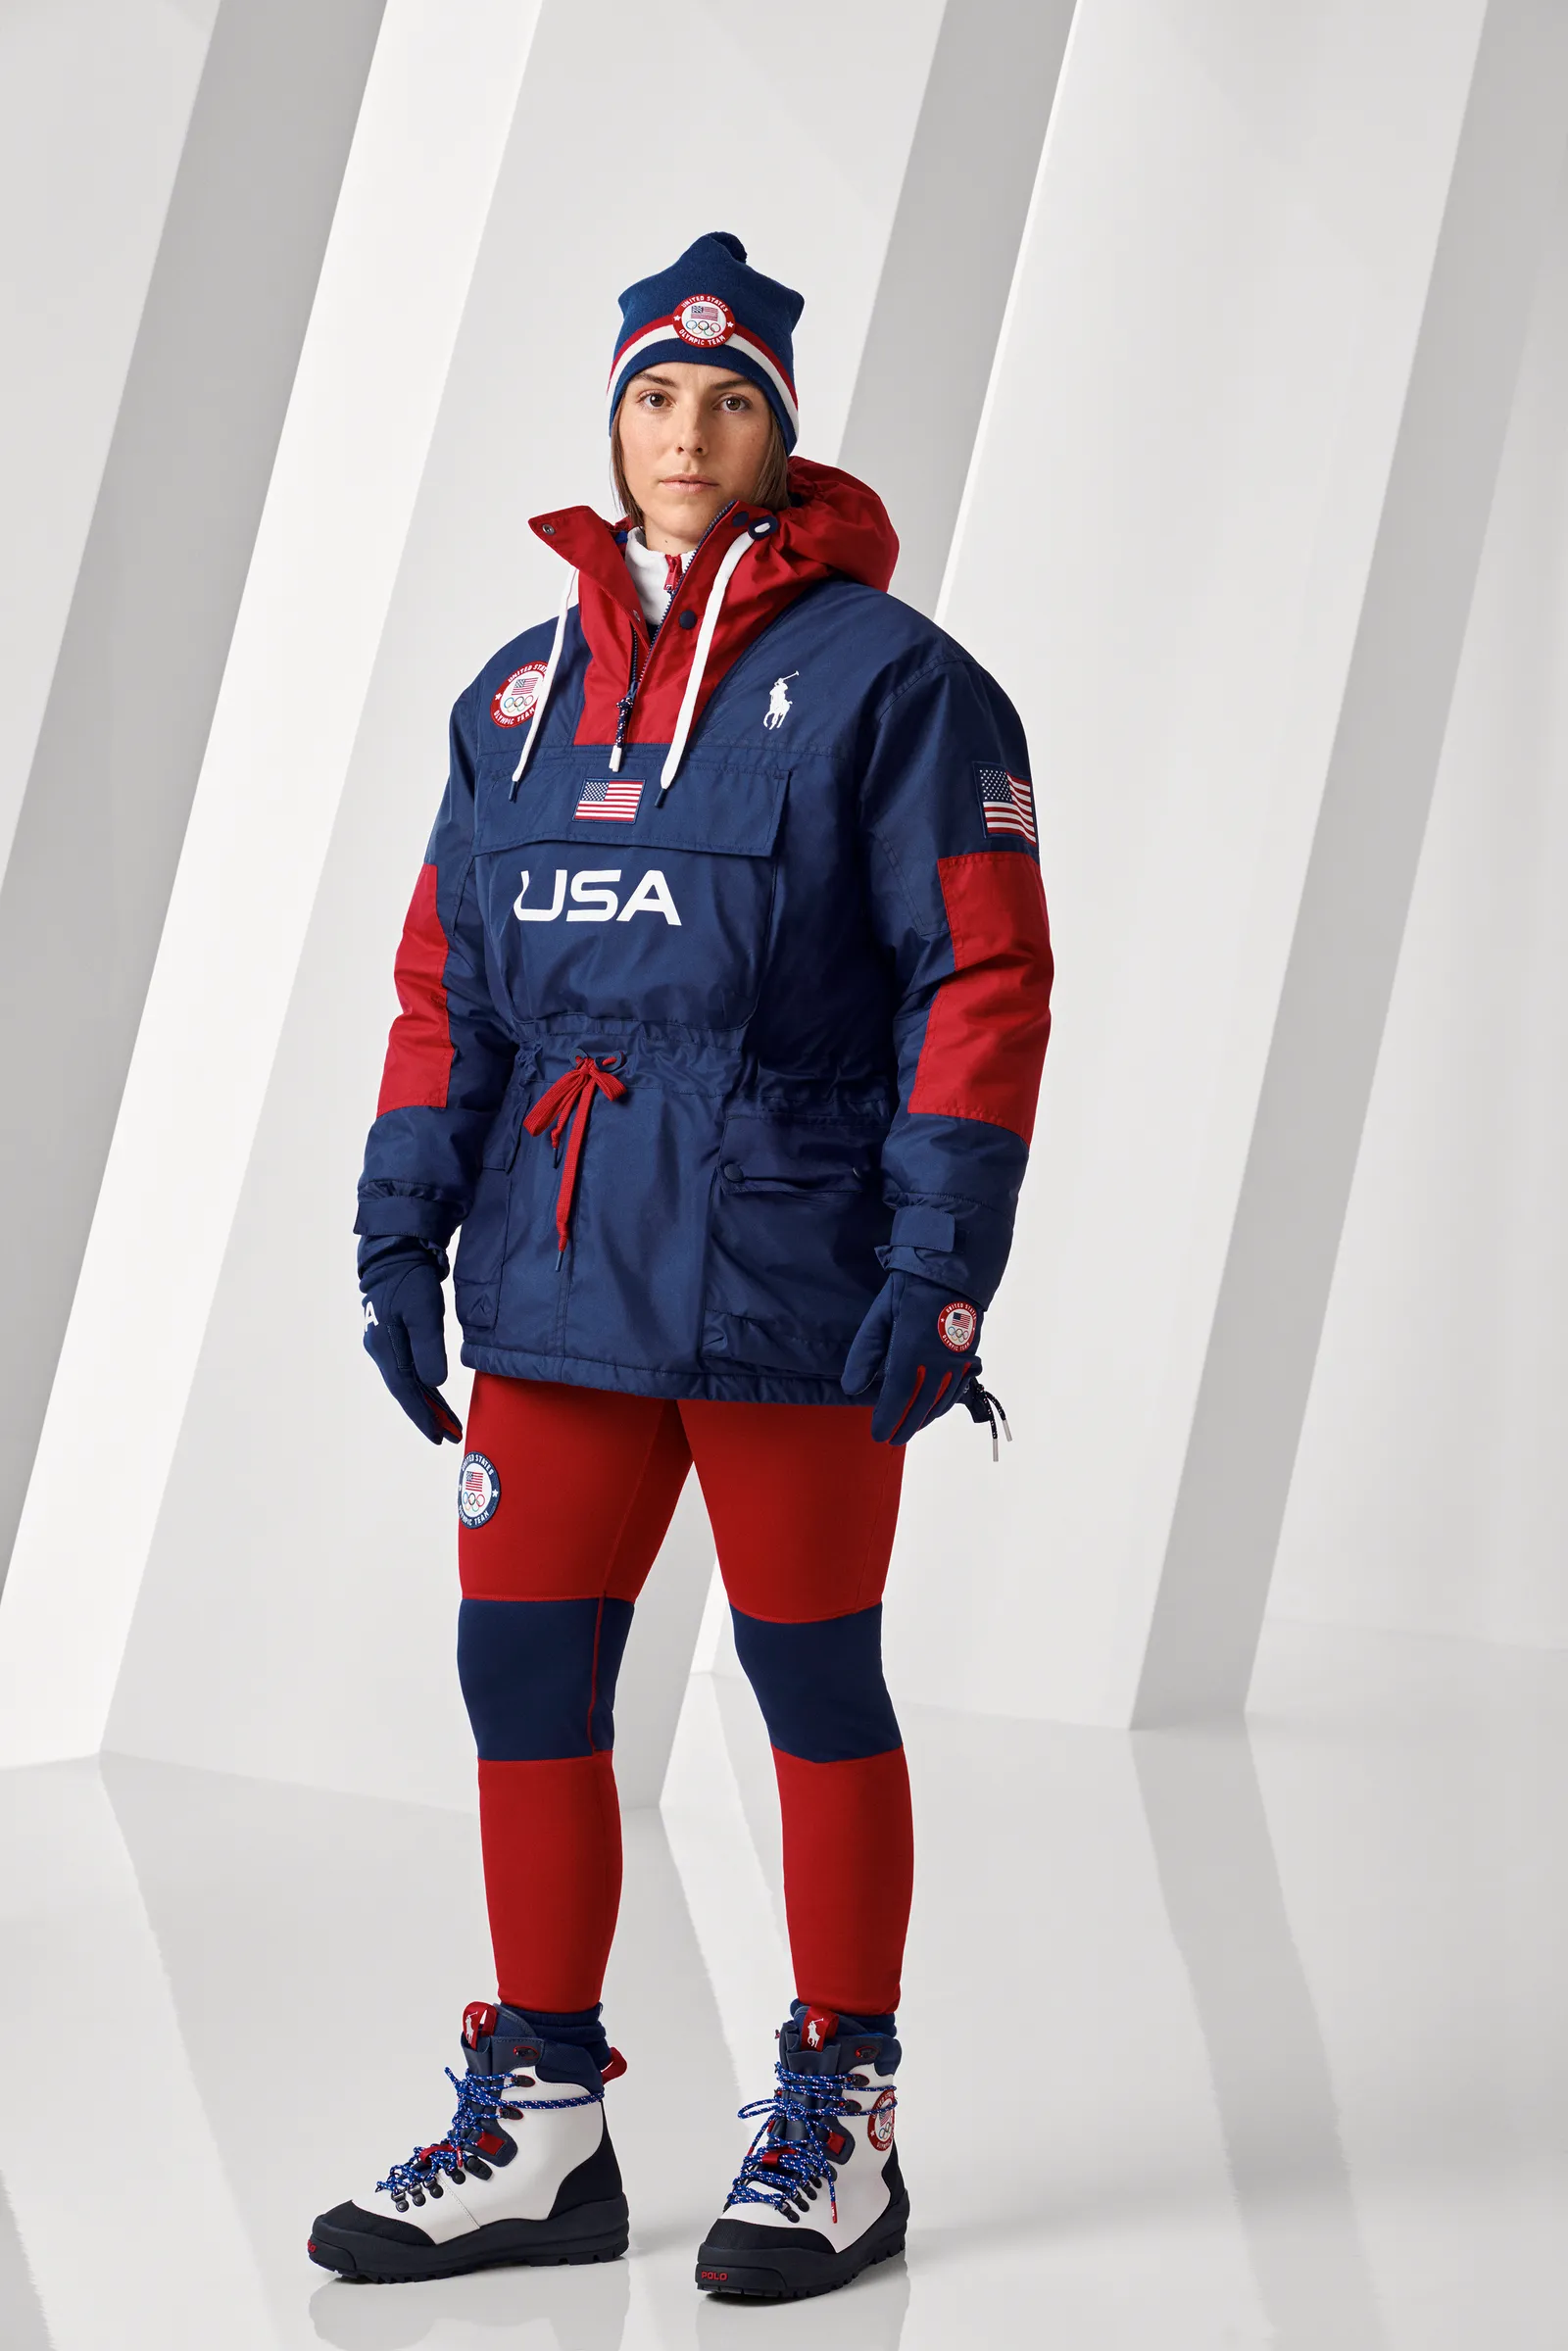 Ralph Lauren представил дизайн зимней спортивной формы для олимпийской команды США (фото 2)